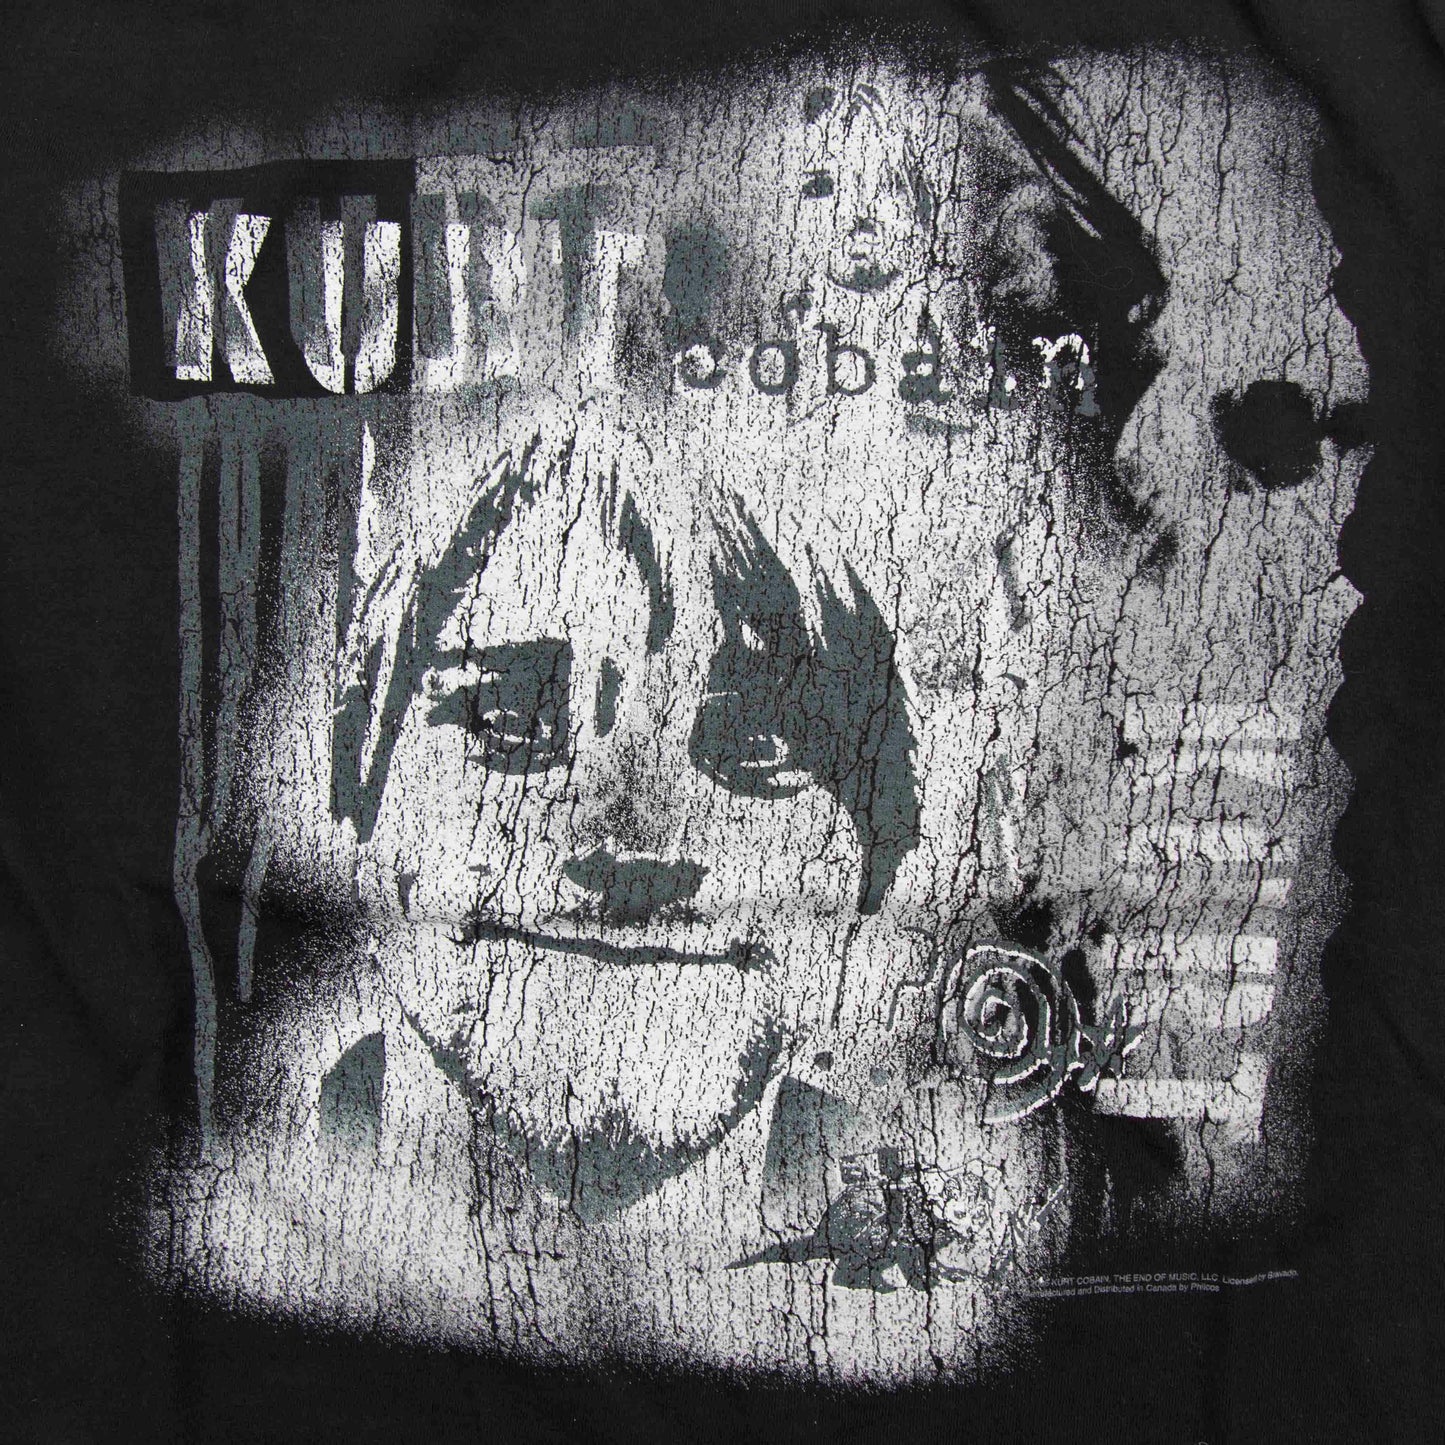 Kurt Cobain - M